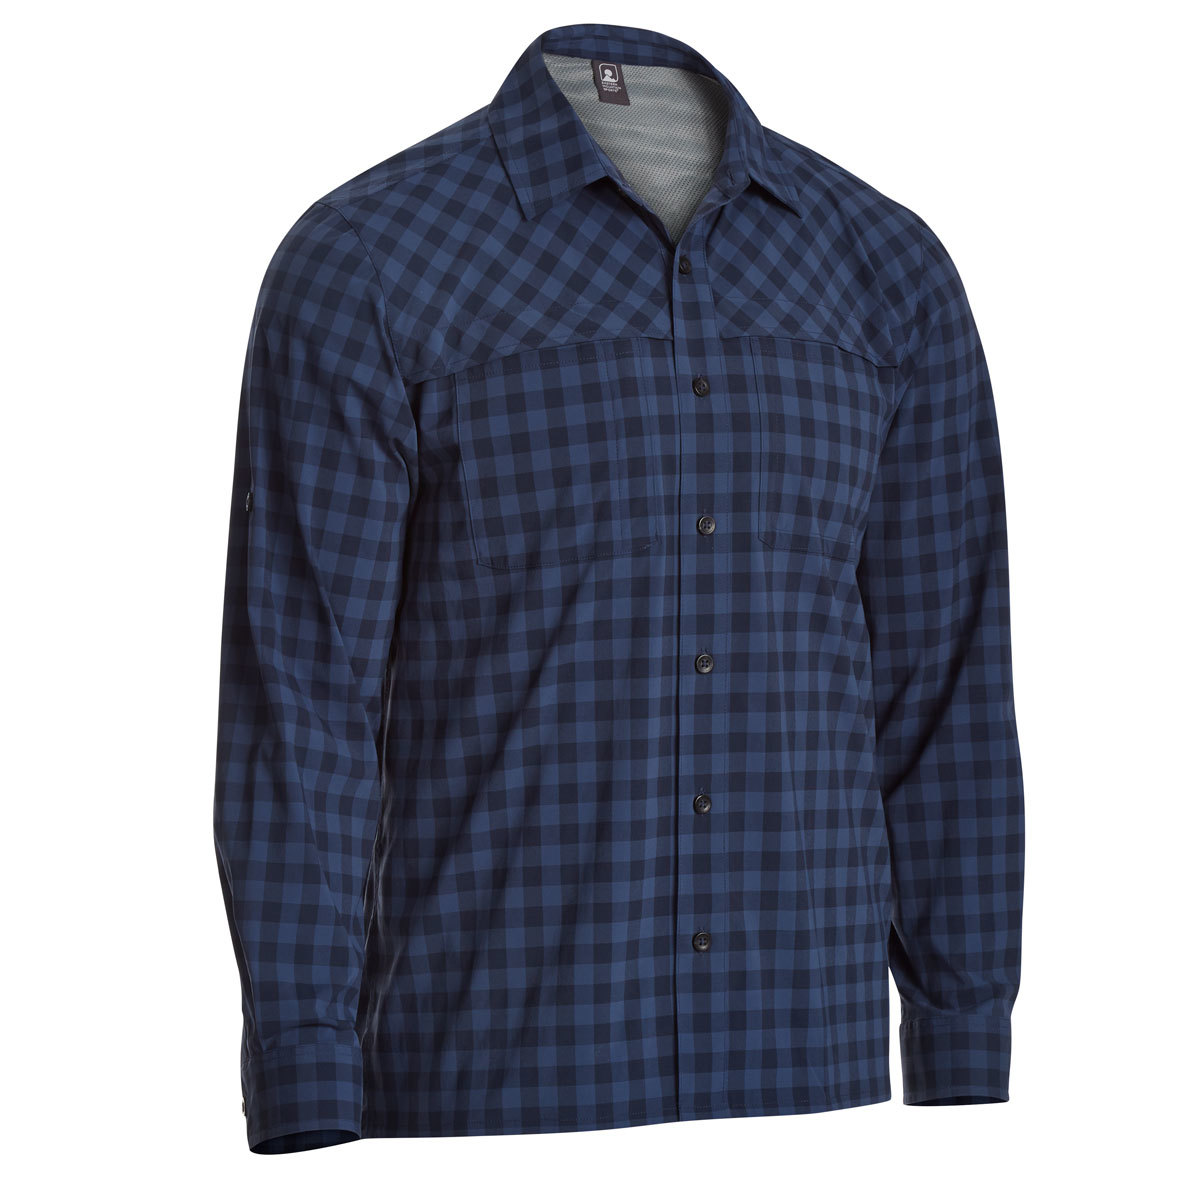 Ems Men's Journey Plaid Long-Sleeve Shirt - Blue, L